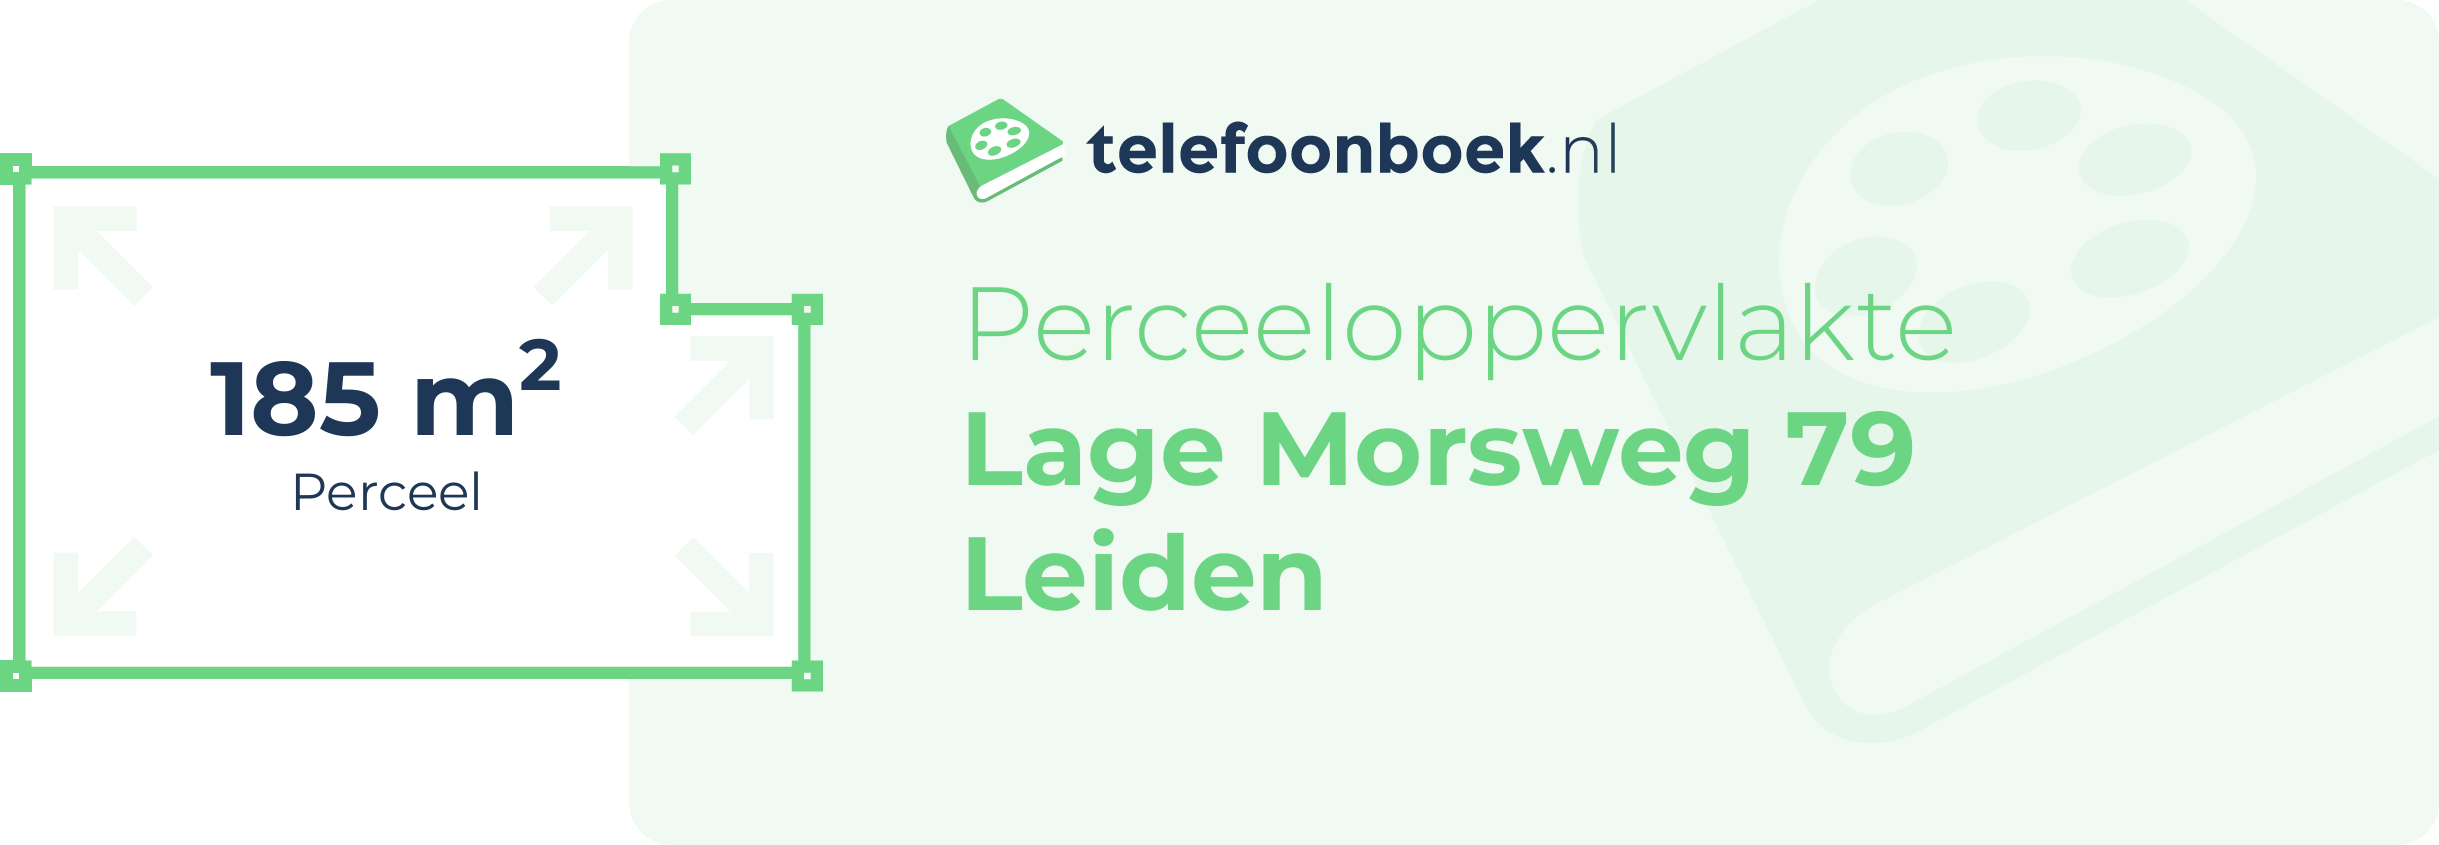 Perceeloppervlakte Lage Morsweg 79 Leiden